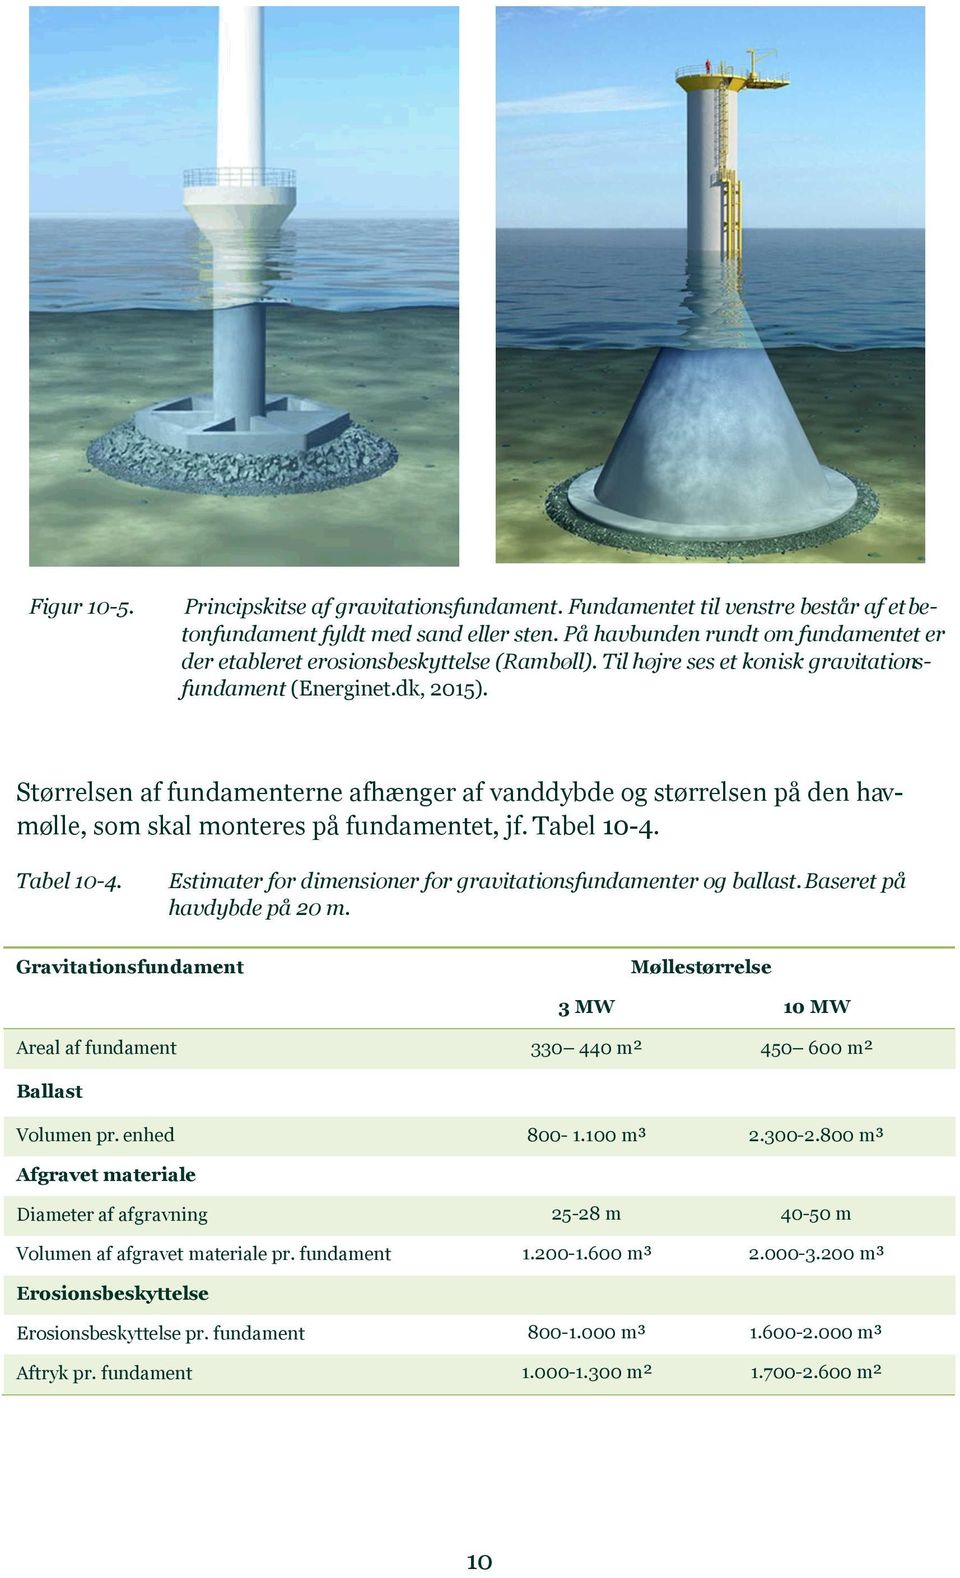 Størrelsen af fundamenterne afhænger af vanddybde og størrelsen på den havmølle, som skal monteres på fundamentet, jf. Tabel 10-4. Tabel 10-4. Estimater for dimensioner for gravitationsfundamenter og ballast.